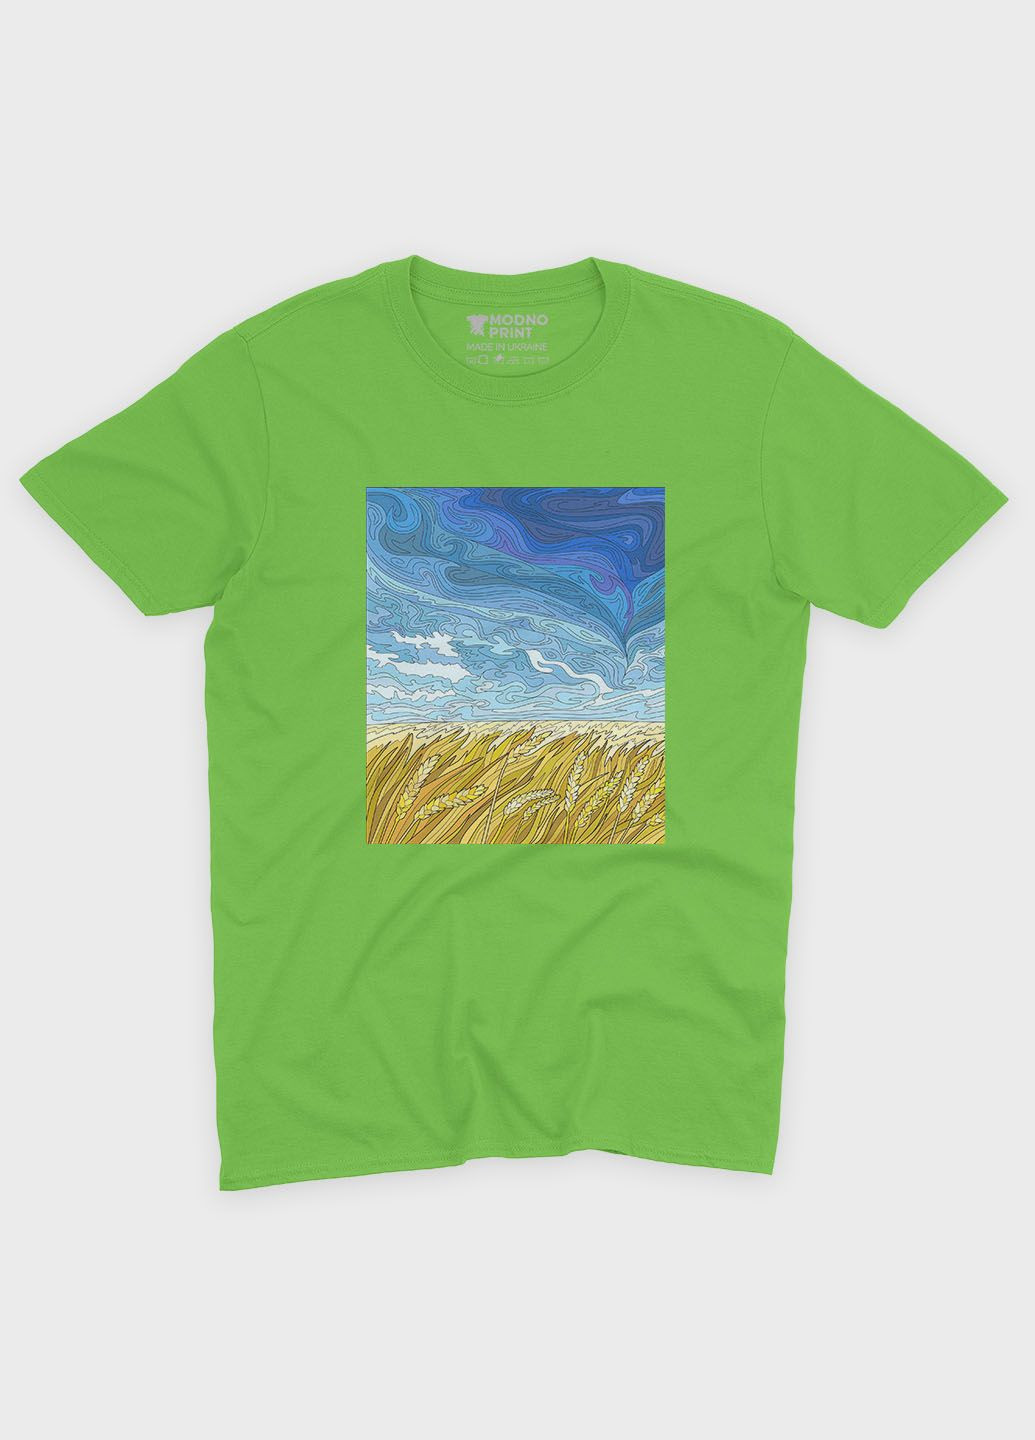 Салатовая демисезонная футболка для мальчика с патриотическим принтом поле (ts001-4-kiw-005-1-108-b) Modno